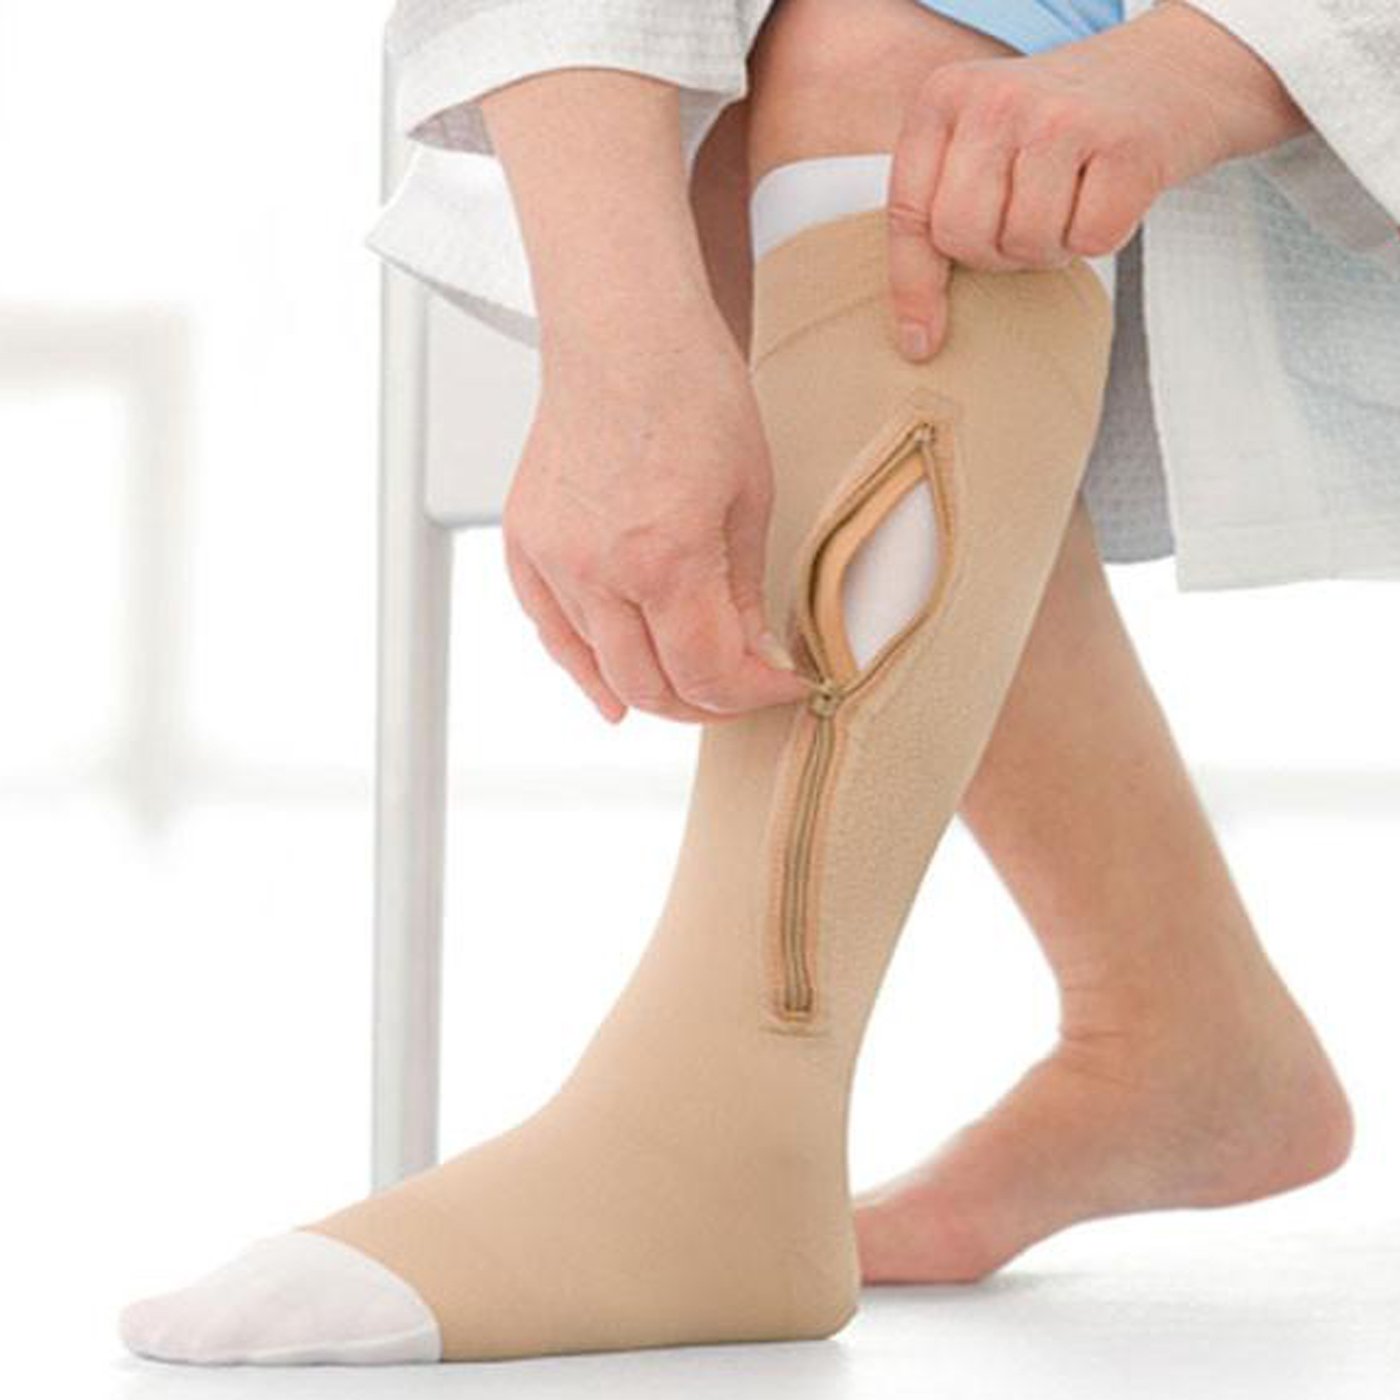 Κάλτσα Γόνατος με εσωτερικό υπόστρωμα JOBST Ulcer Care για Έλκη